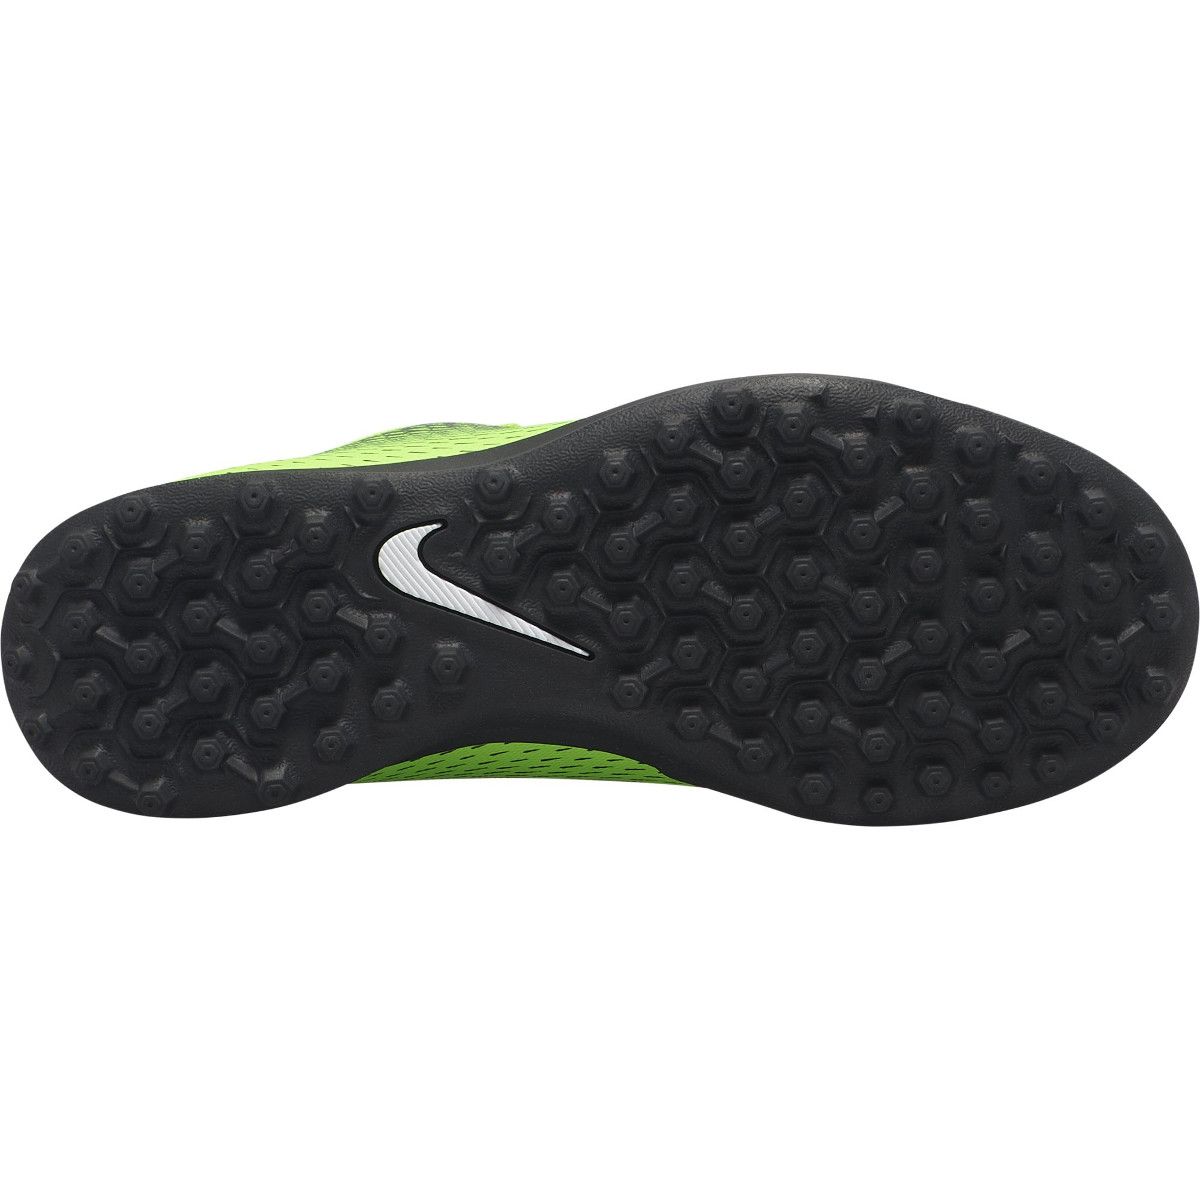 Nike Jr. BravataX II (TF) Turf Kids' Football Boots 844440-3